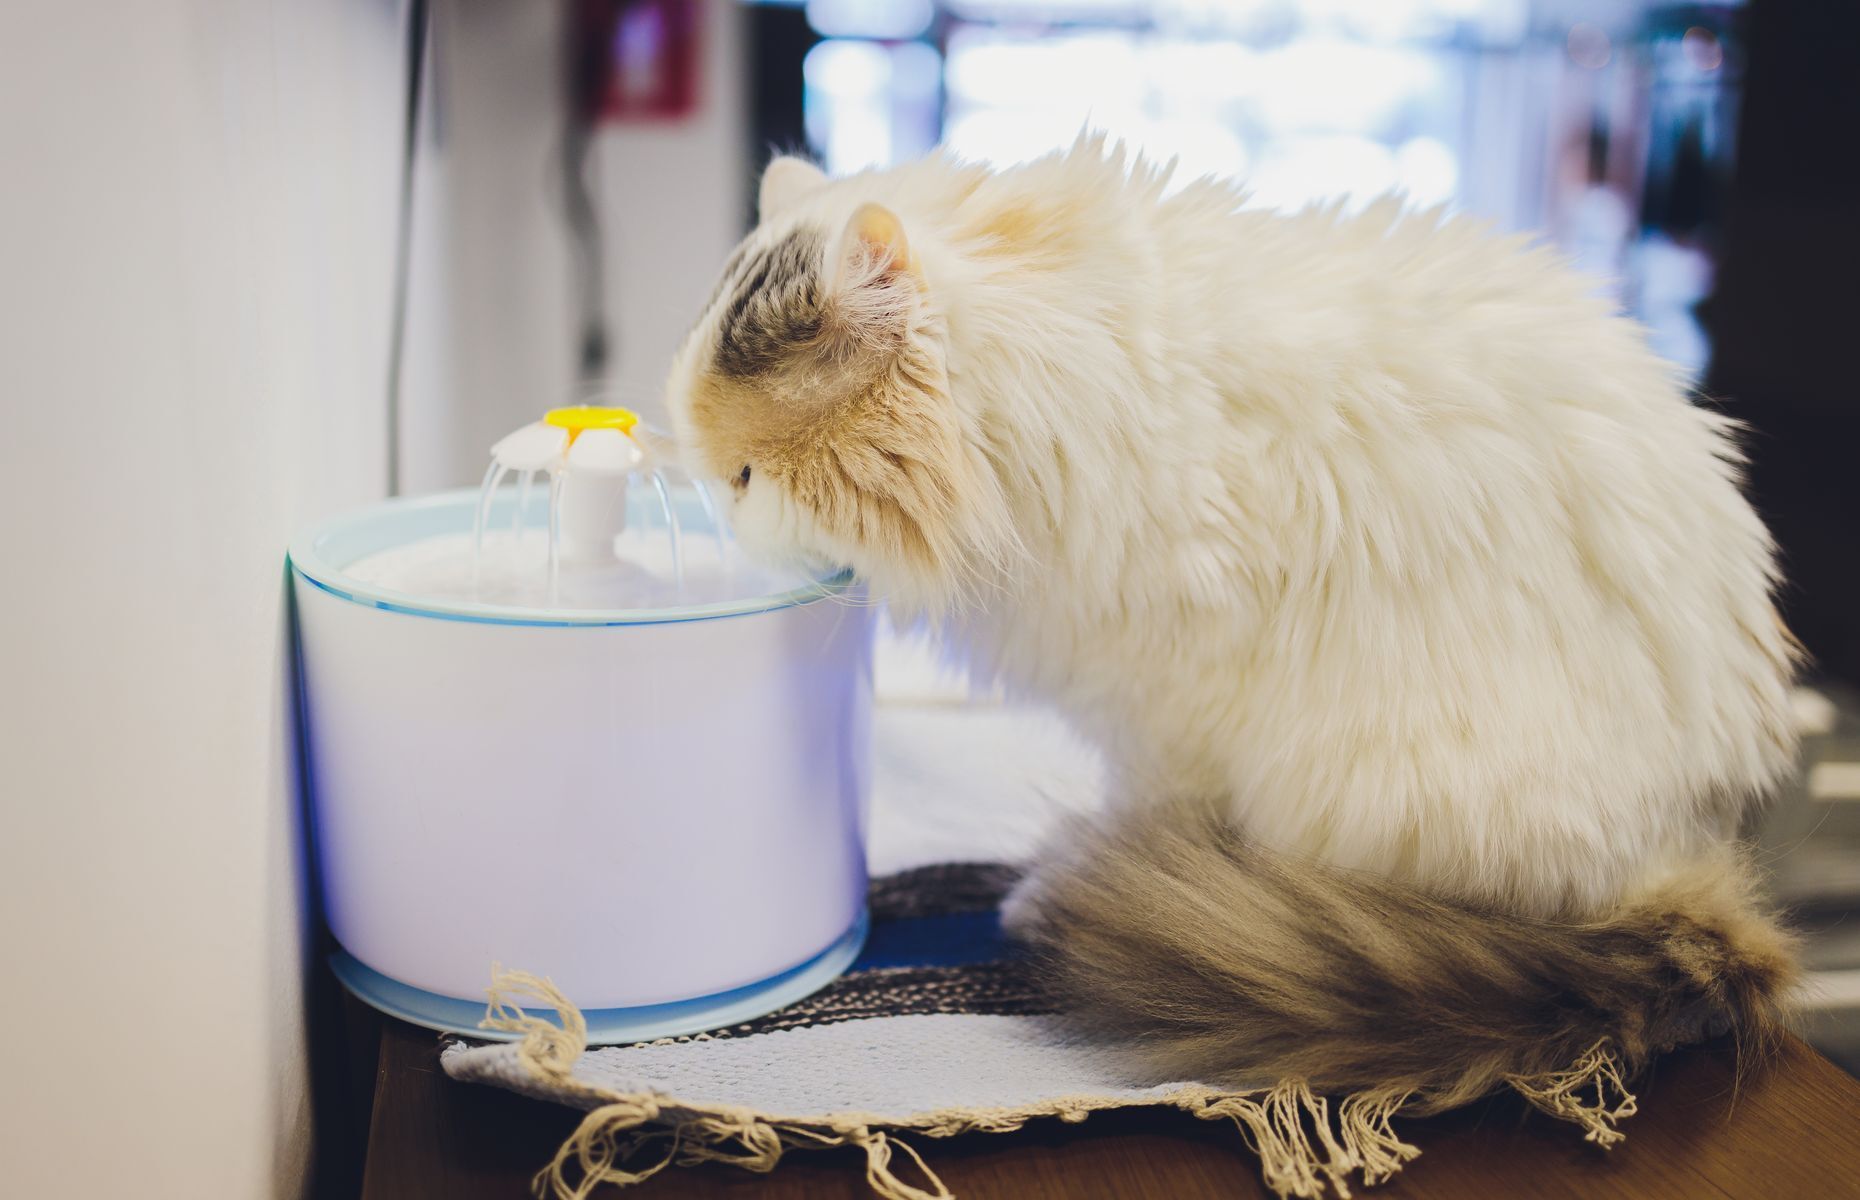 <p>On a souvent en tête l’idée que le chat est un animal du désert et que, par conséquent, il n’a pas à boire beaucoup. Or, <a href="https://www.croquetteland.com/blog/chat/alimentation/hydratation-du-chat.html">les chats ont besoin d’être hydratés</a>, comme tous les mammifères. Assurez-vous de lui fournir de l’eau fraîche (avec une fontaine par exemple) et de laver son bol d’eau tous les jours. Complétez son régime alimentaire avec un peu de nourriture humide s’il mange principalement des croquettes sèches.</p>